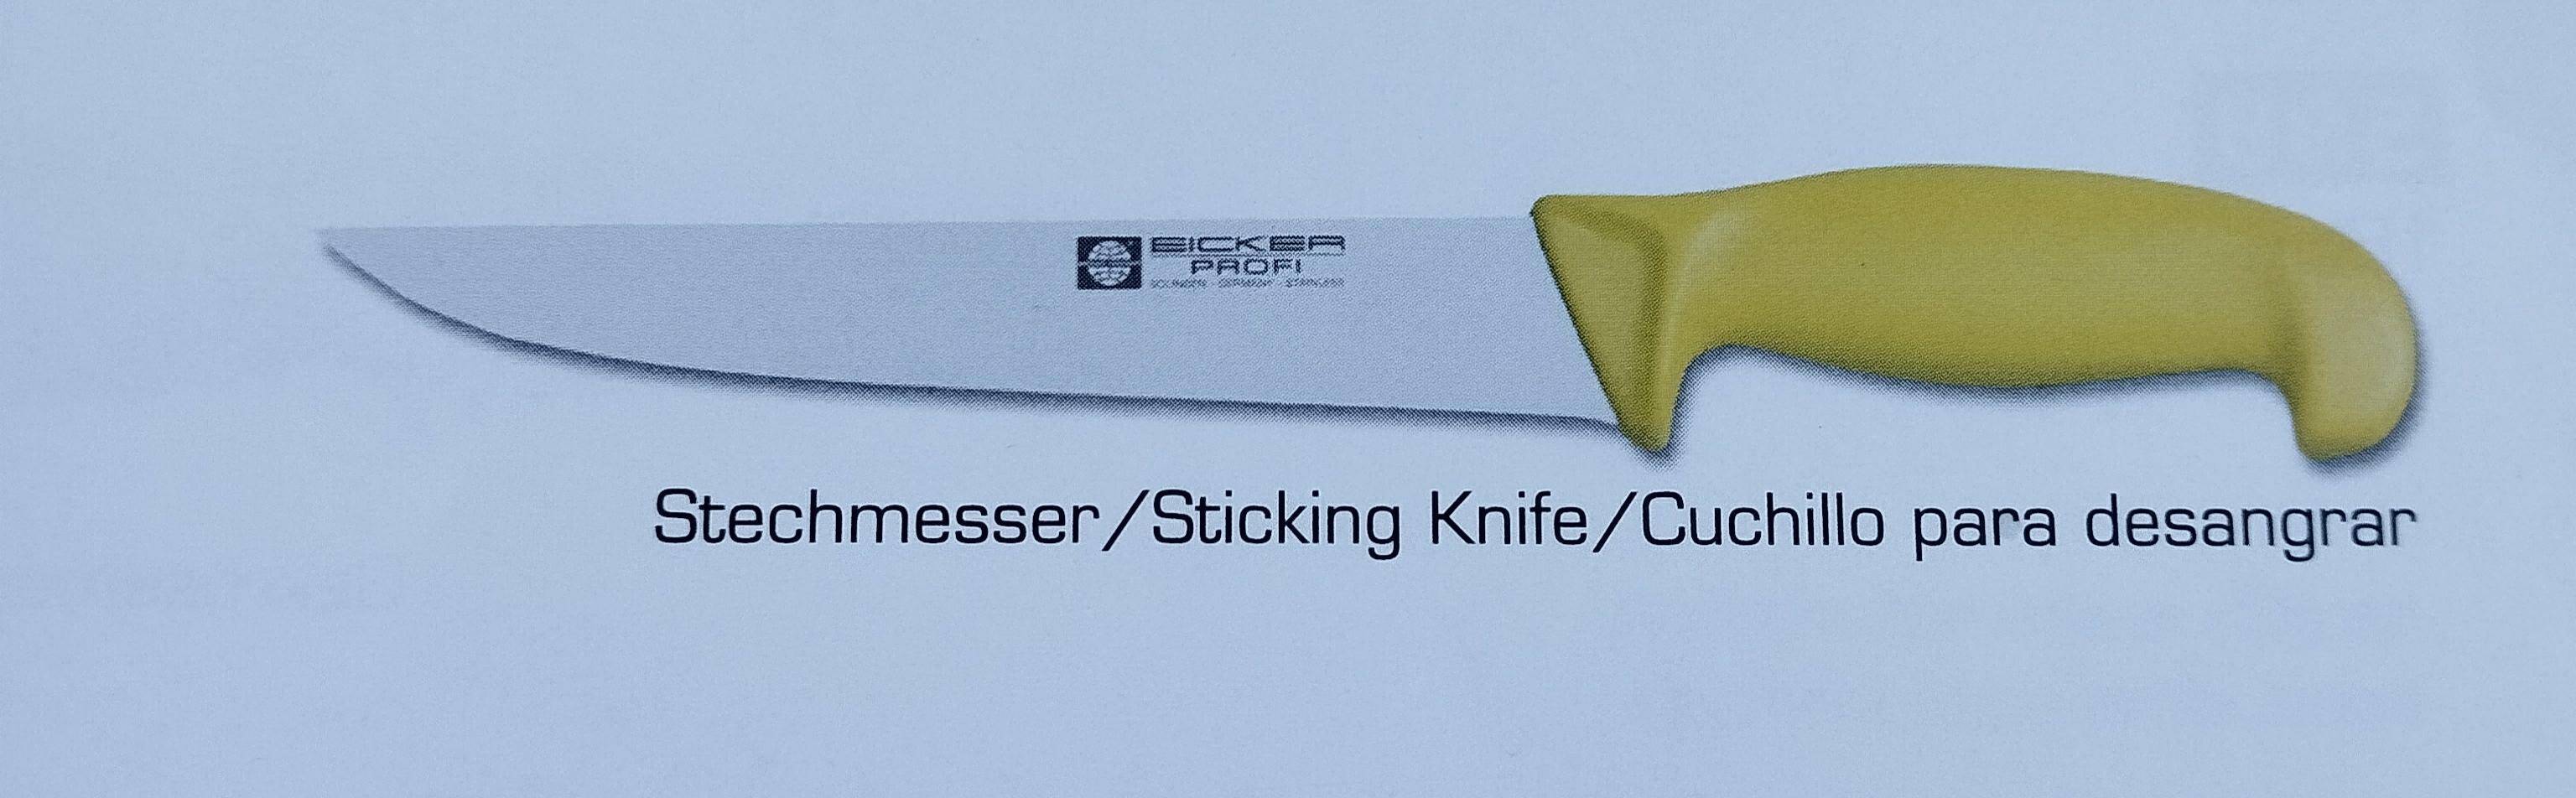 nóż EICKER 6050221 niebieski